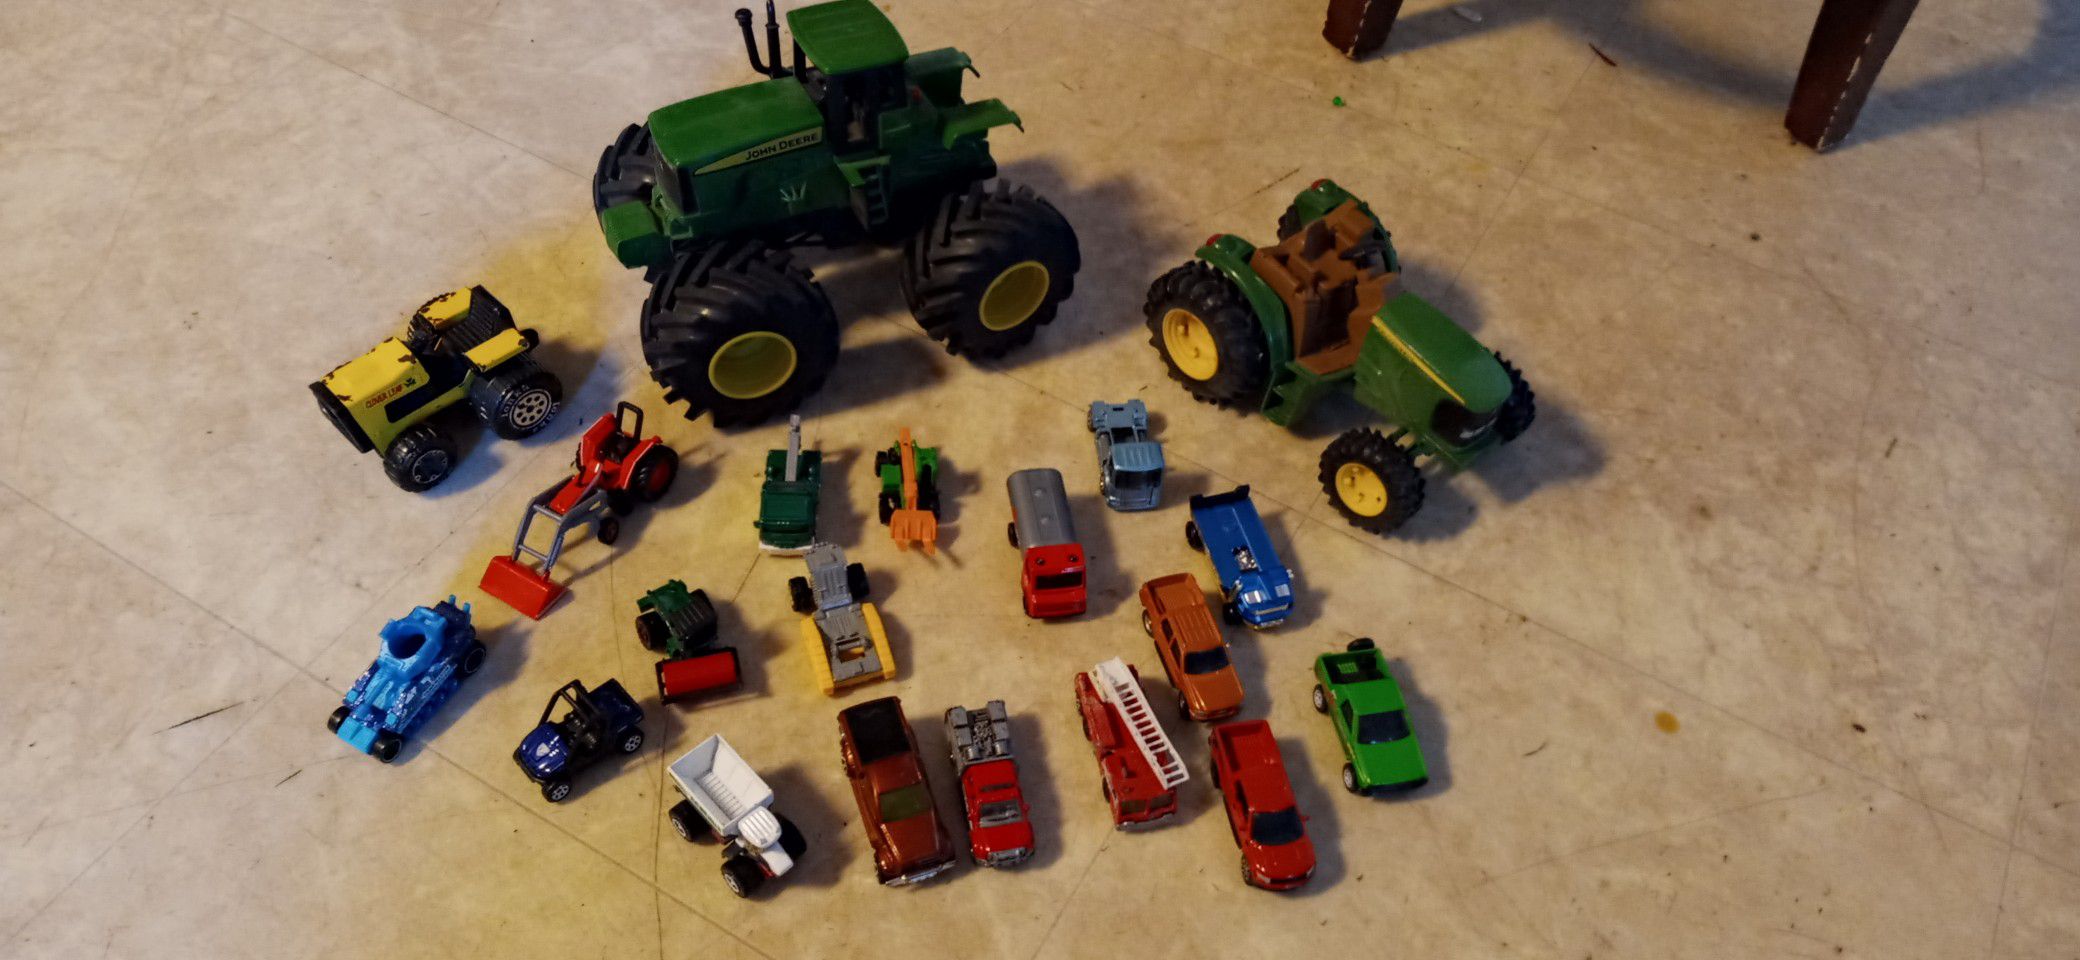 John Deere tractors & matchbox tractors & trucks